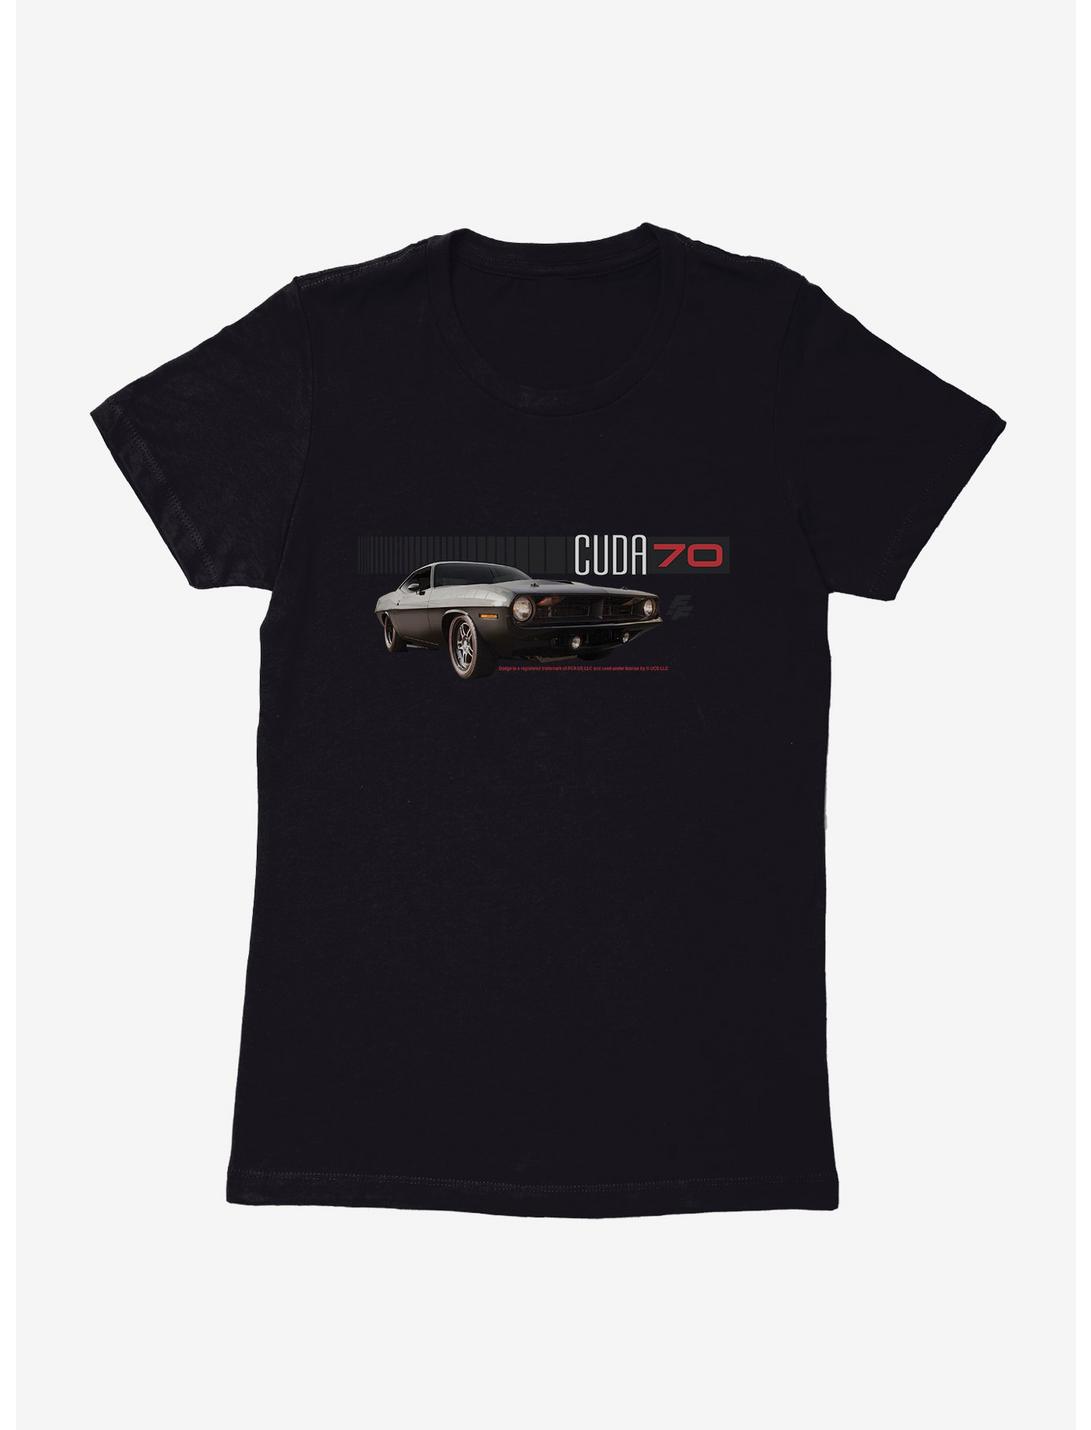 Fast & Furious 'Cuda 1970 Womens T-Shirt, BLACK, hi-res